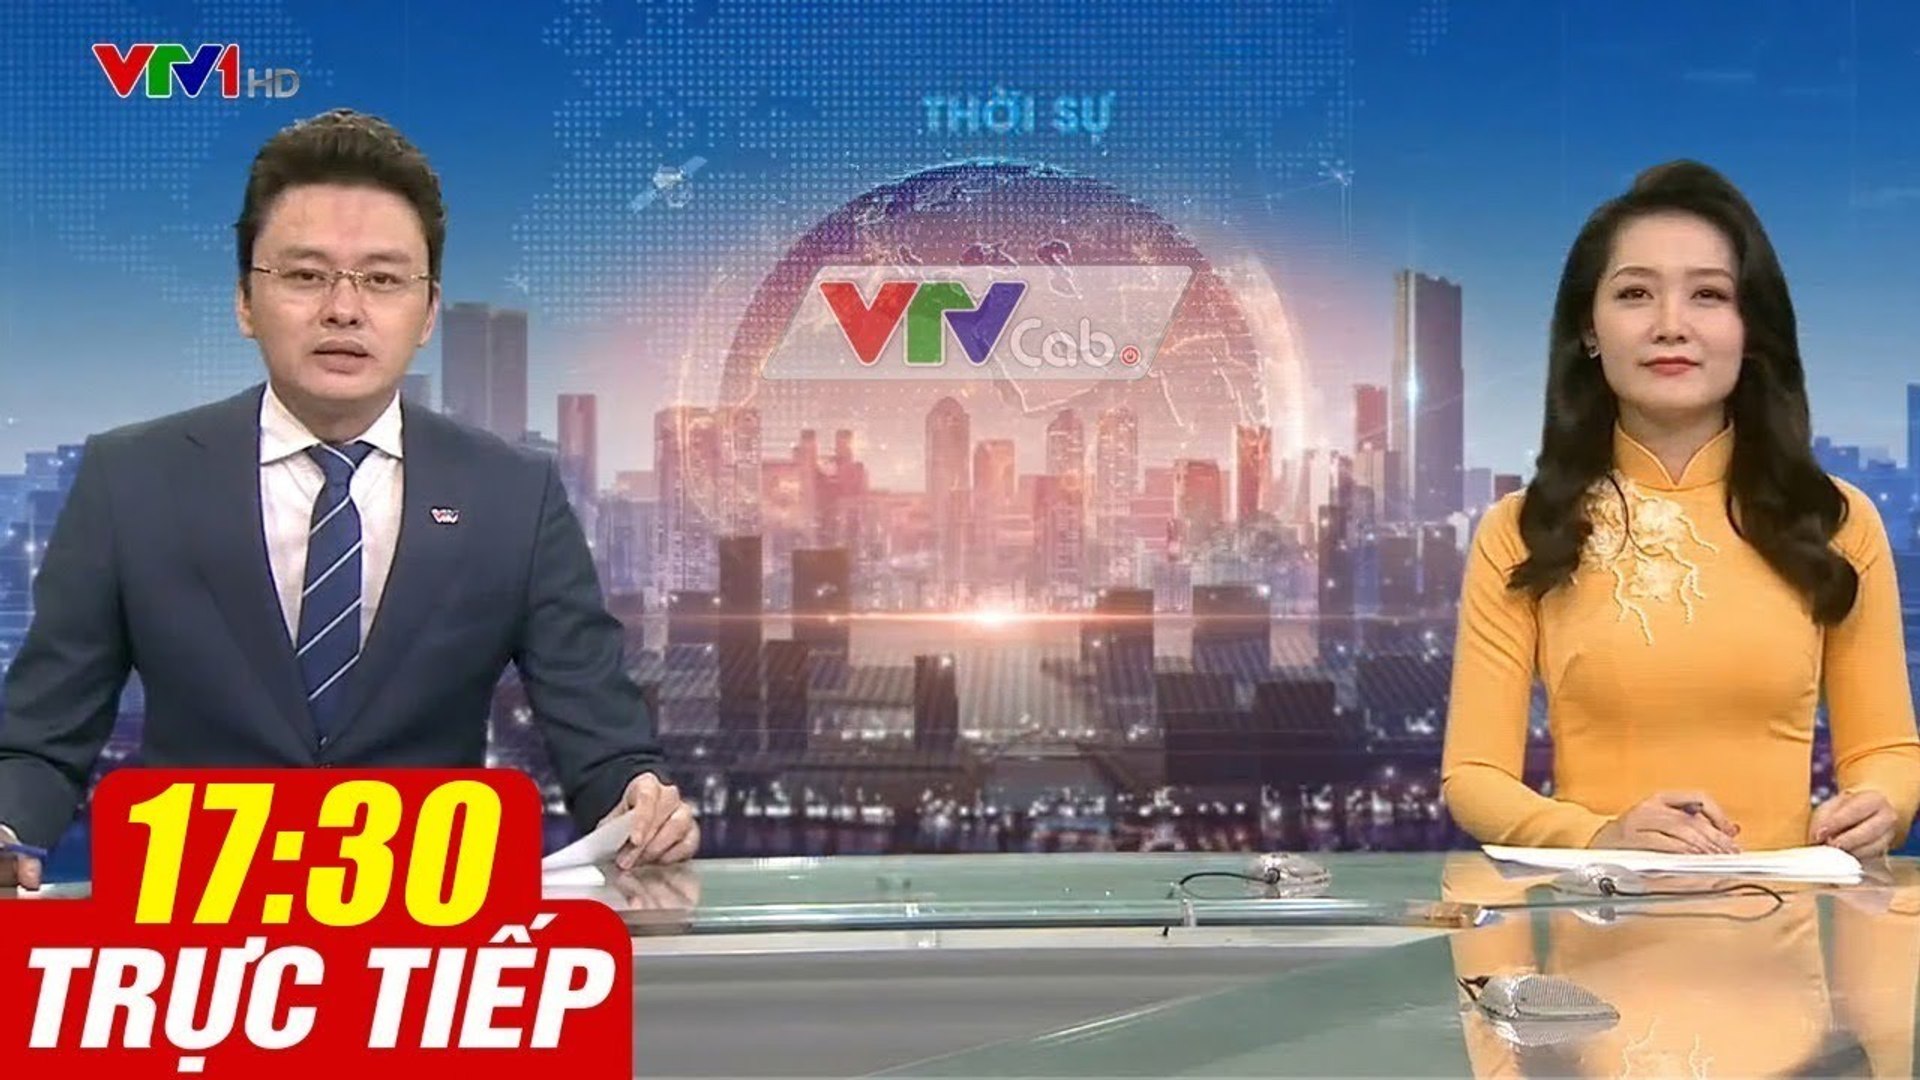 Trực Tiếp VIỆT NAM HÔM NAY 17h30 ngày 20.10.2020  Tin tức thời sự VTV1 mới nhất hôm nay